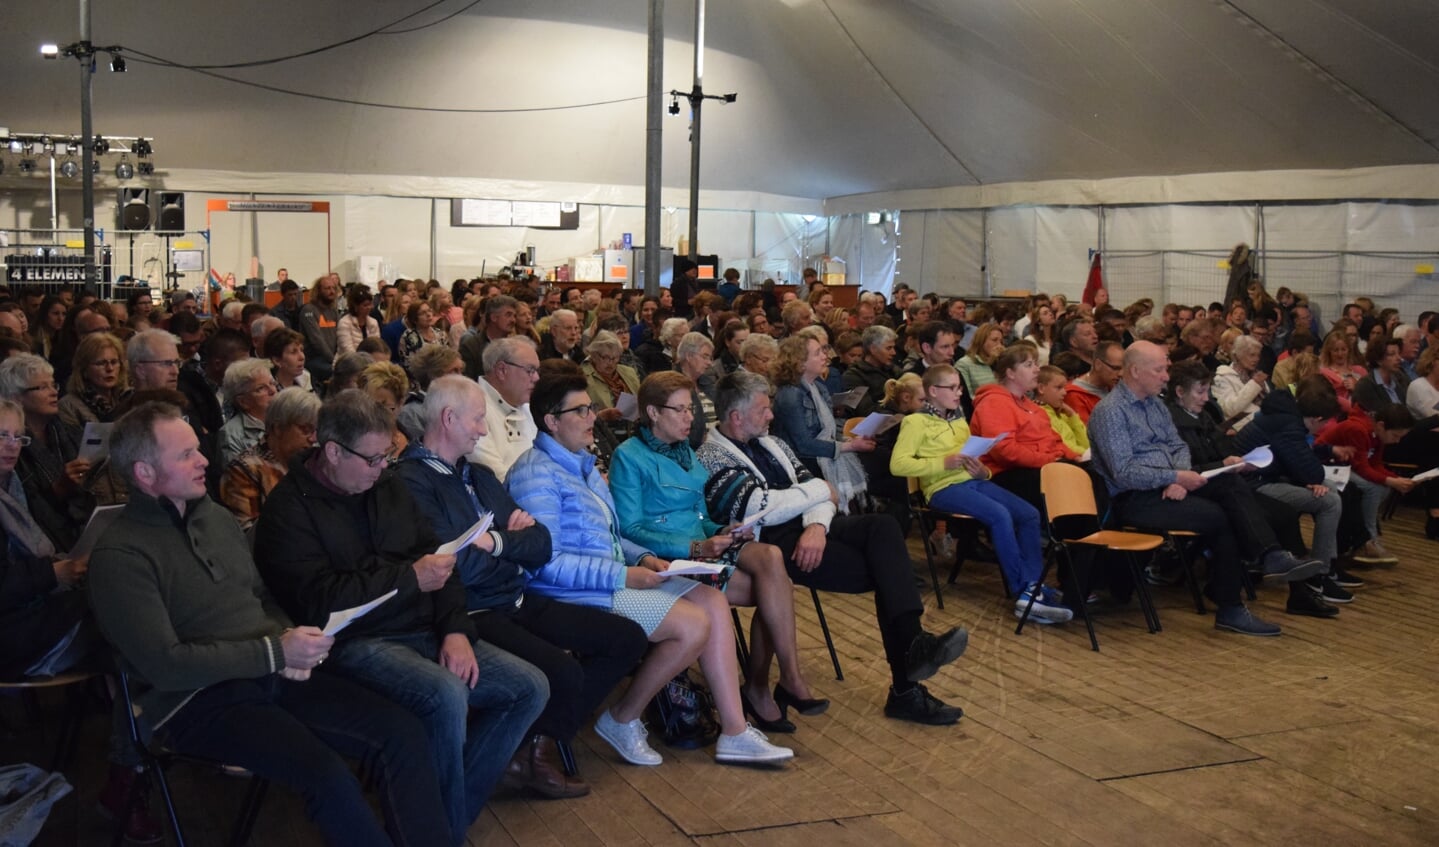 Zondagmiddag 30 april werd in Westbroek een leuke week vol evenementen afgesloten met de tentdienst. Meer dan 300 mensen waren aanwezig en zongen en baden met elkaar. [WE] 